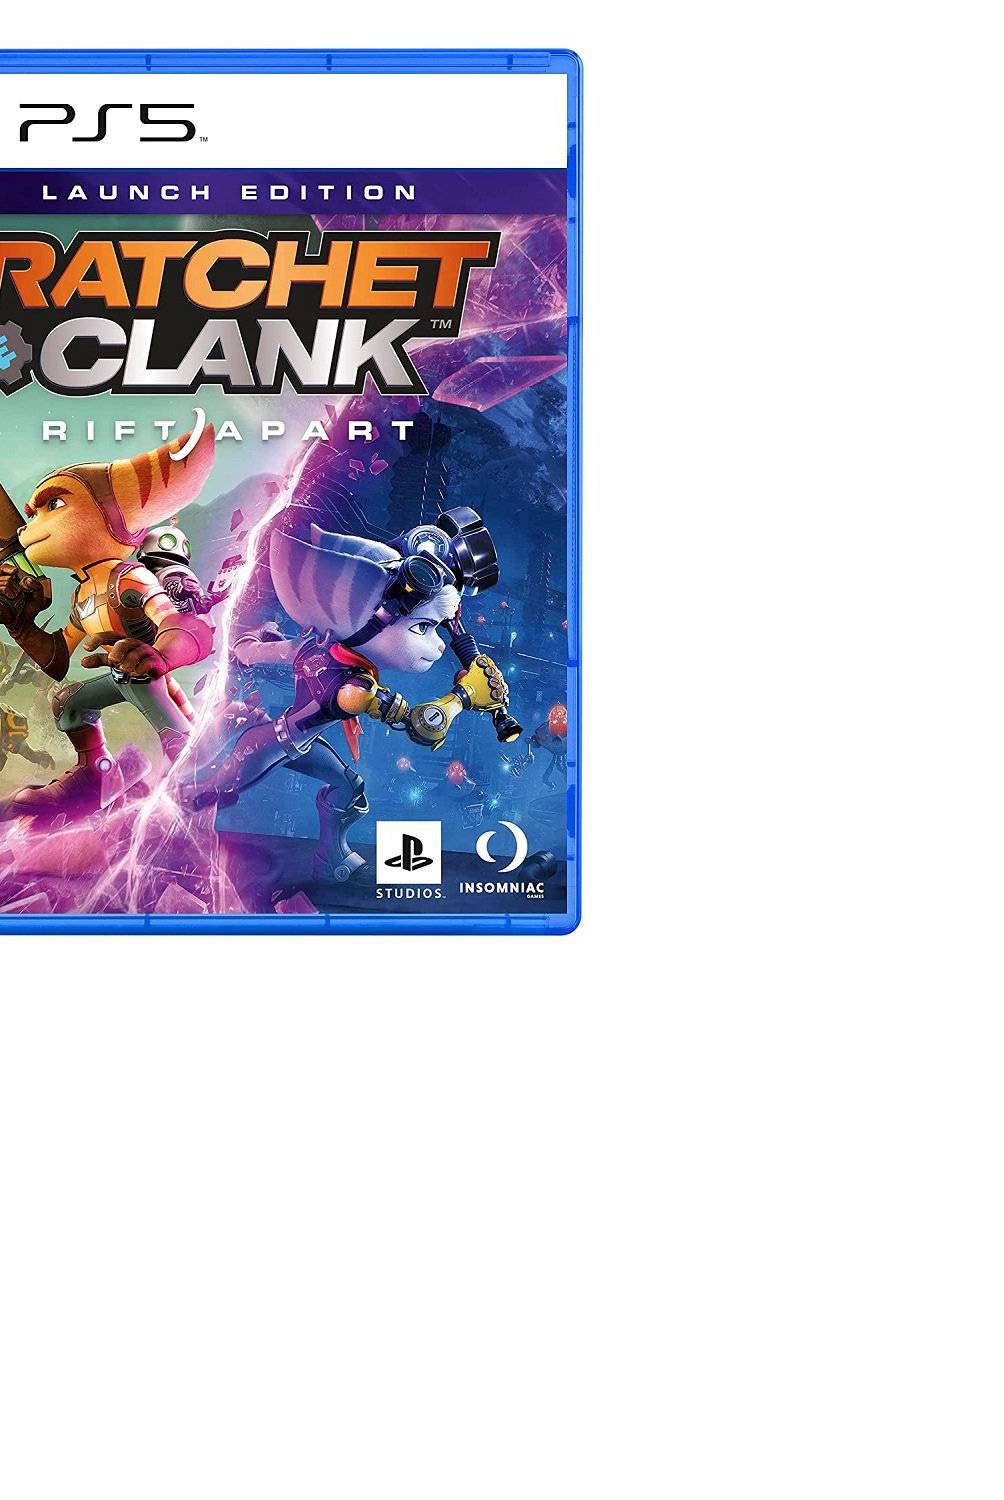 PLAYSTATION - Juego PS5 Ratchet & Clank Accion y Aventura